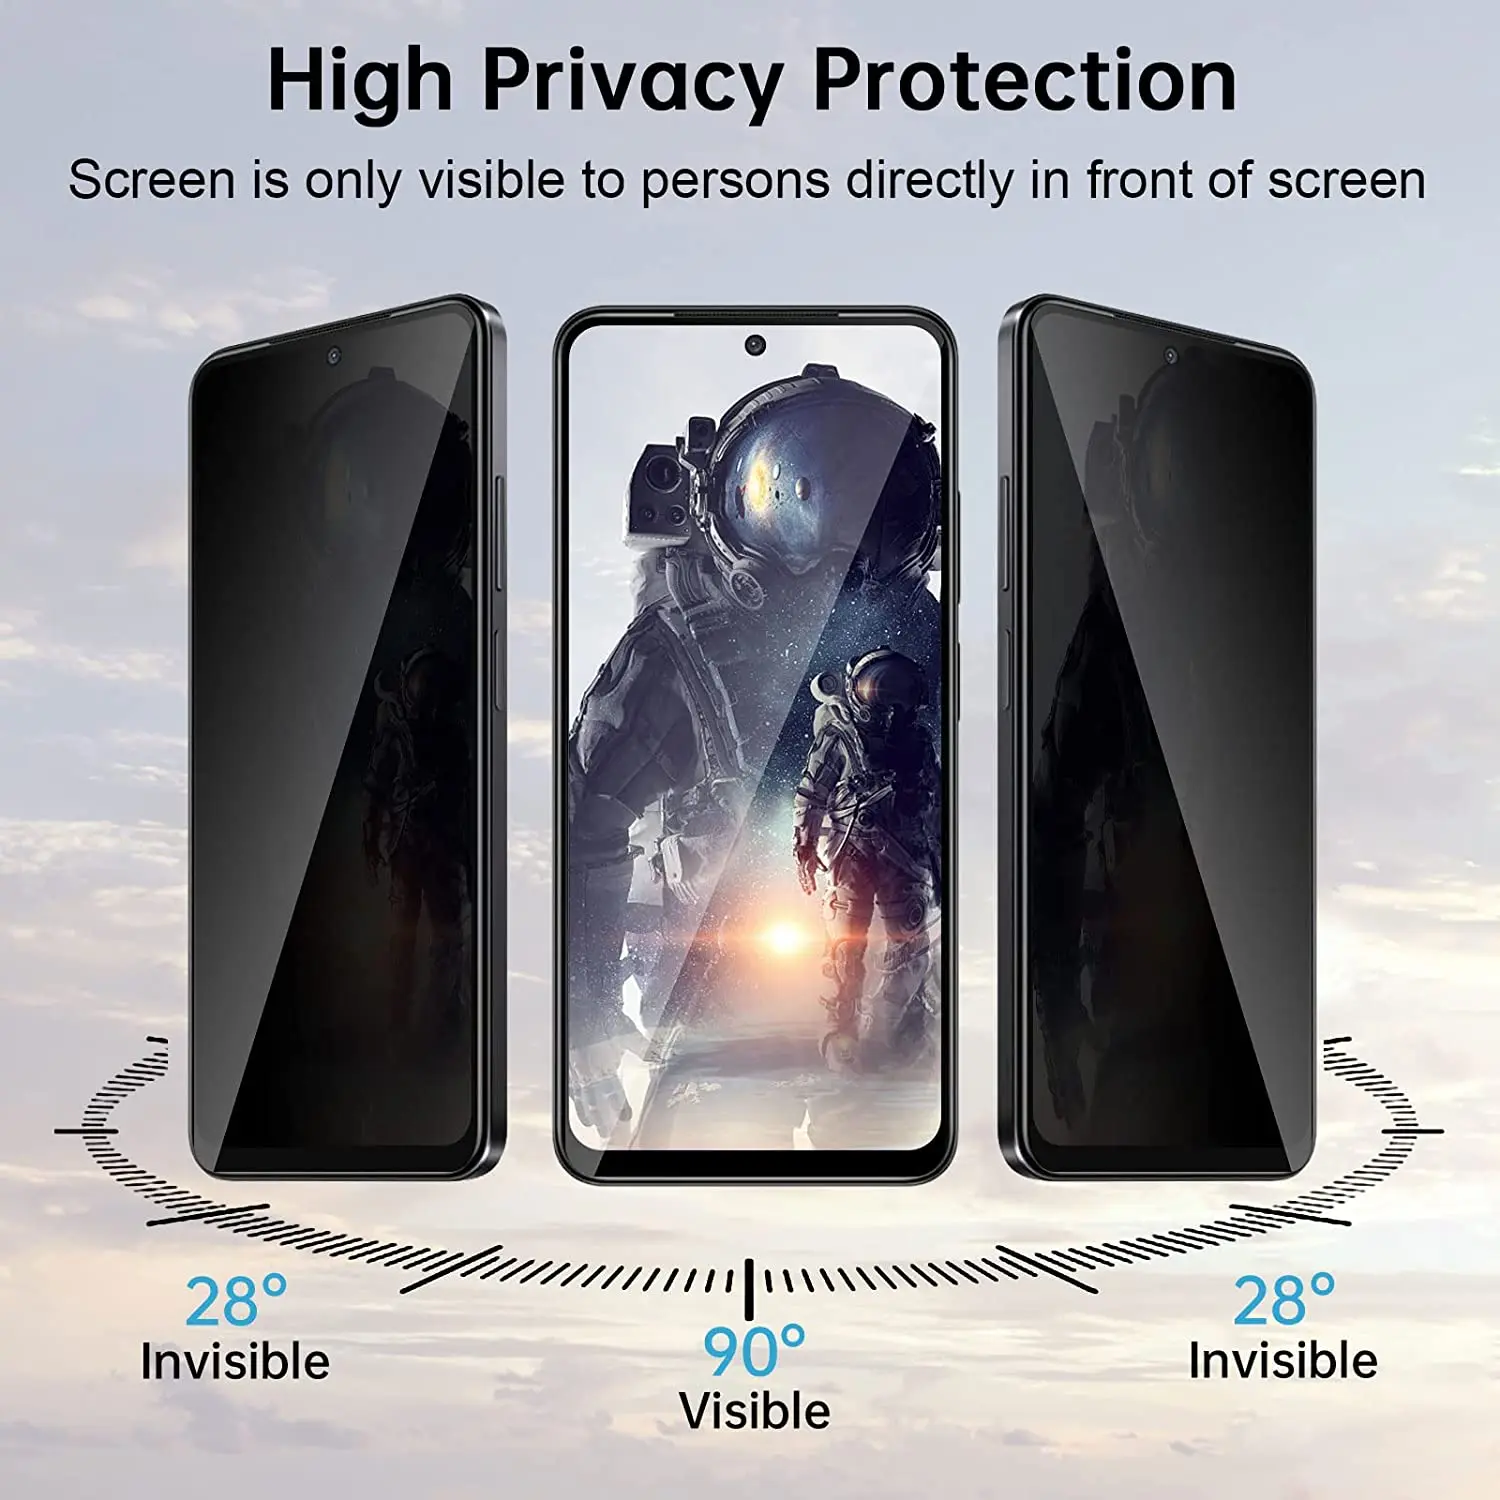 2/4 шт. антишпионское закаленное стекло для Oppo A58 4G защита для экрана Защитная пленка для конфиденциальности